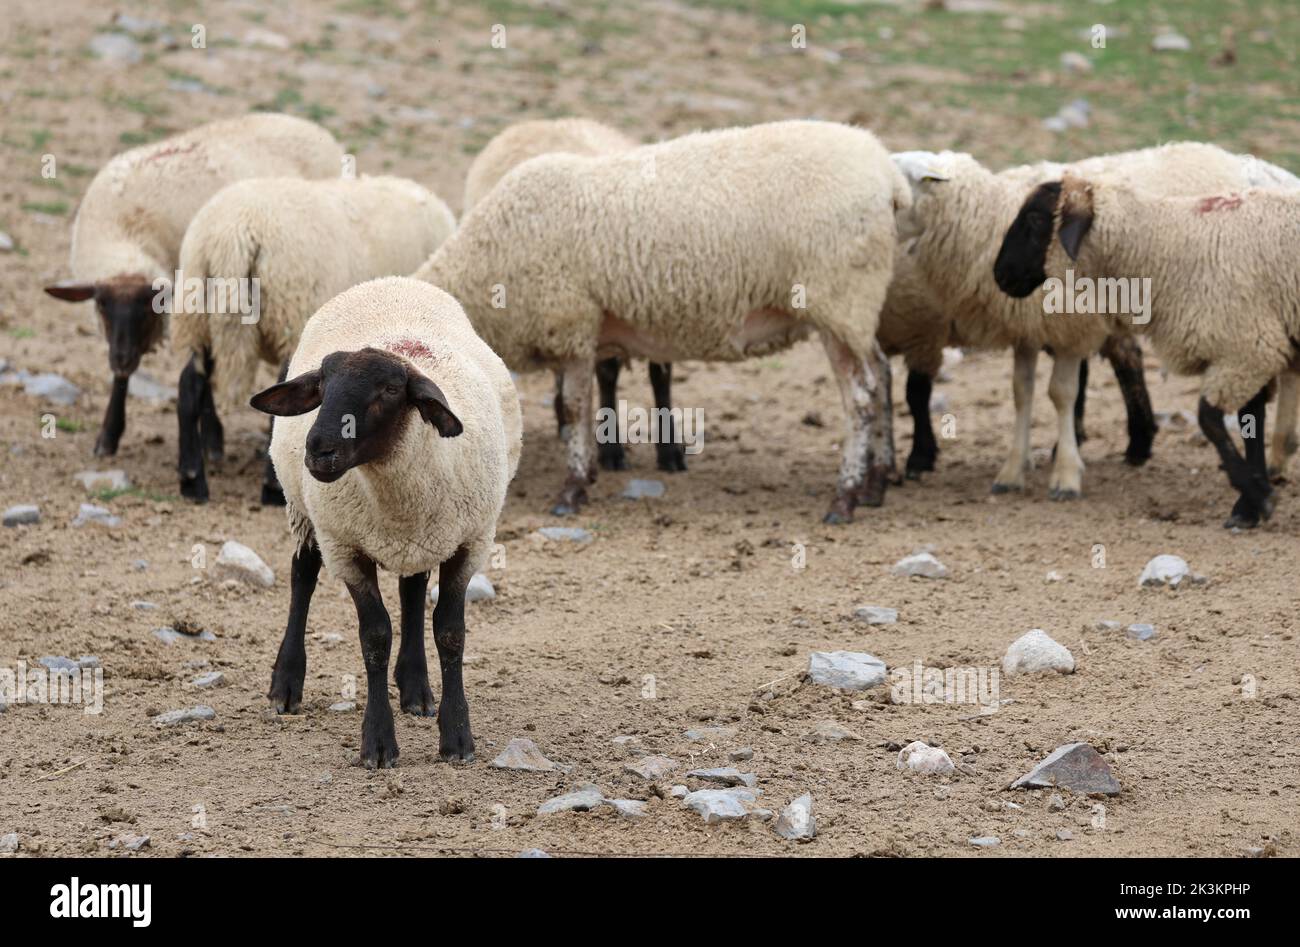 Pastoreo de ovejas suffolk con cabeza y patas negras en el norte de Europa Foto de stock